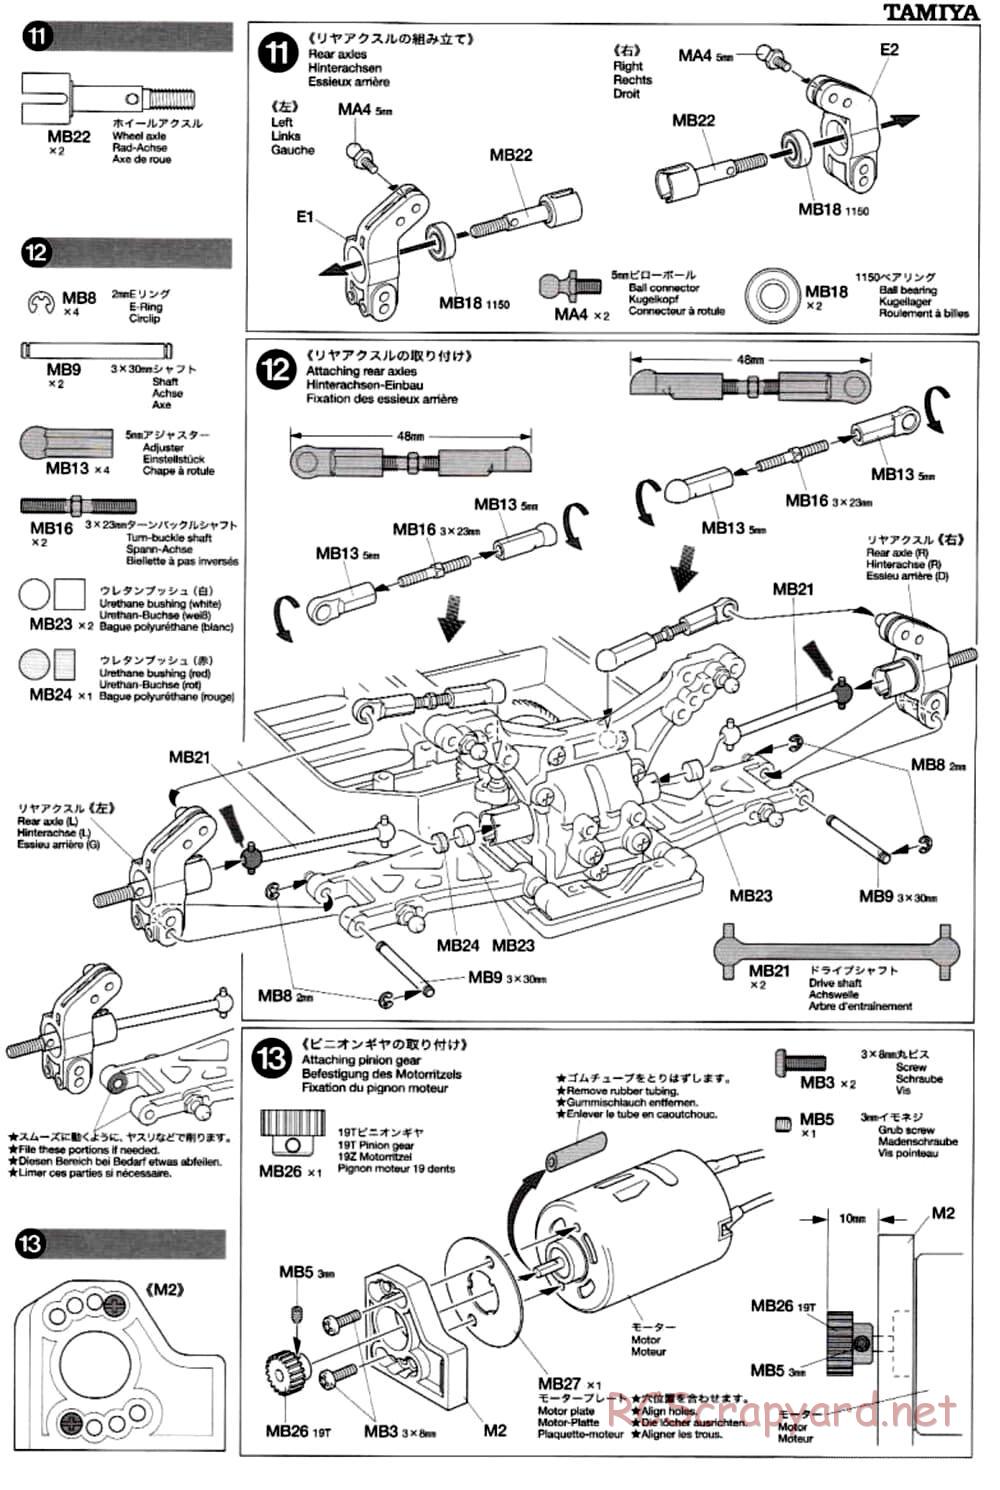 Tamiya - TB-02 Chassis - Manual - Page 9